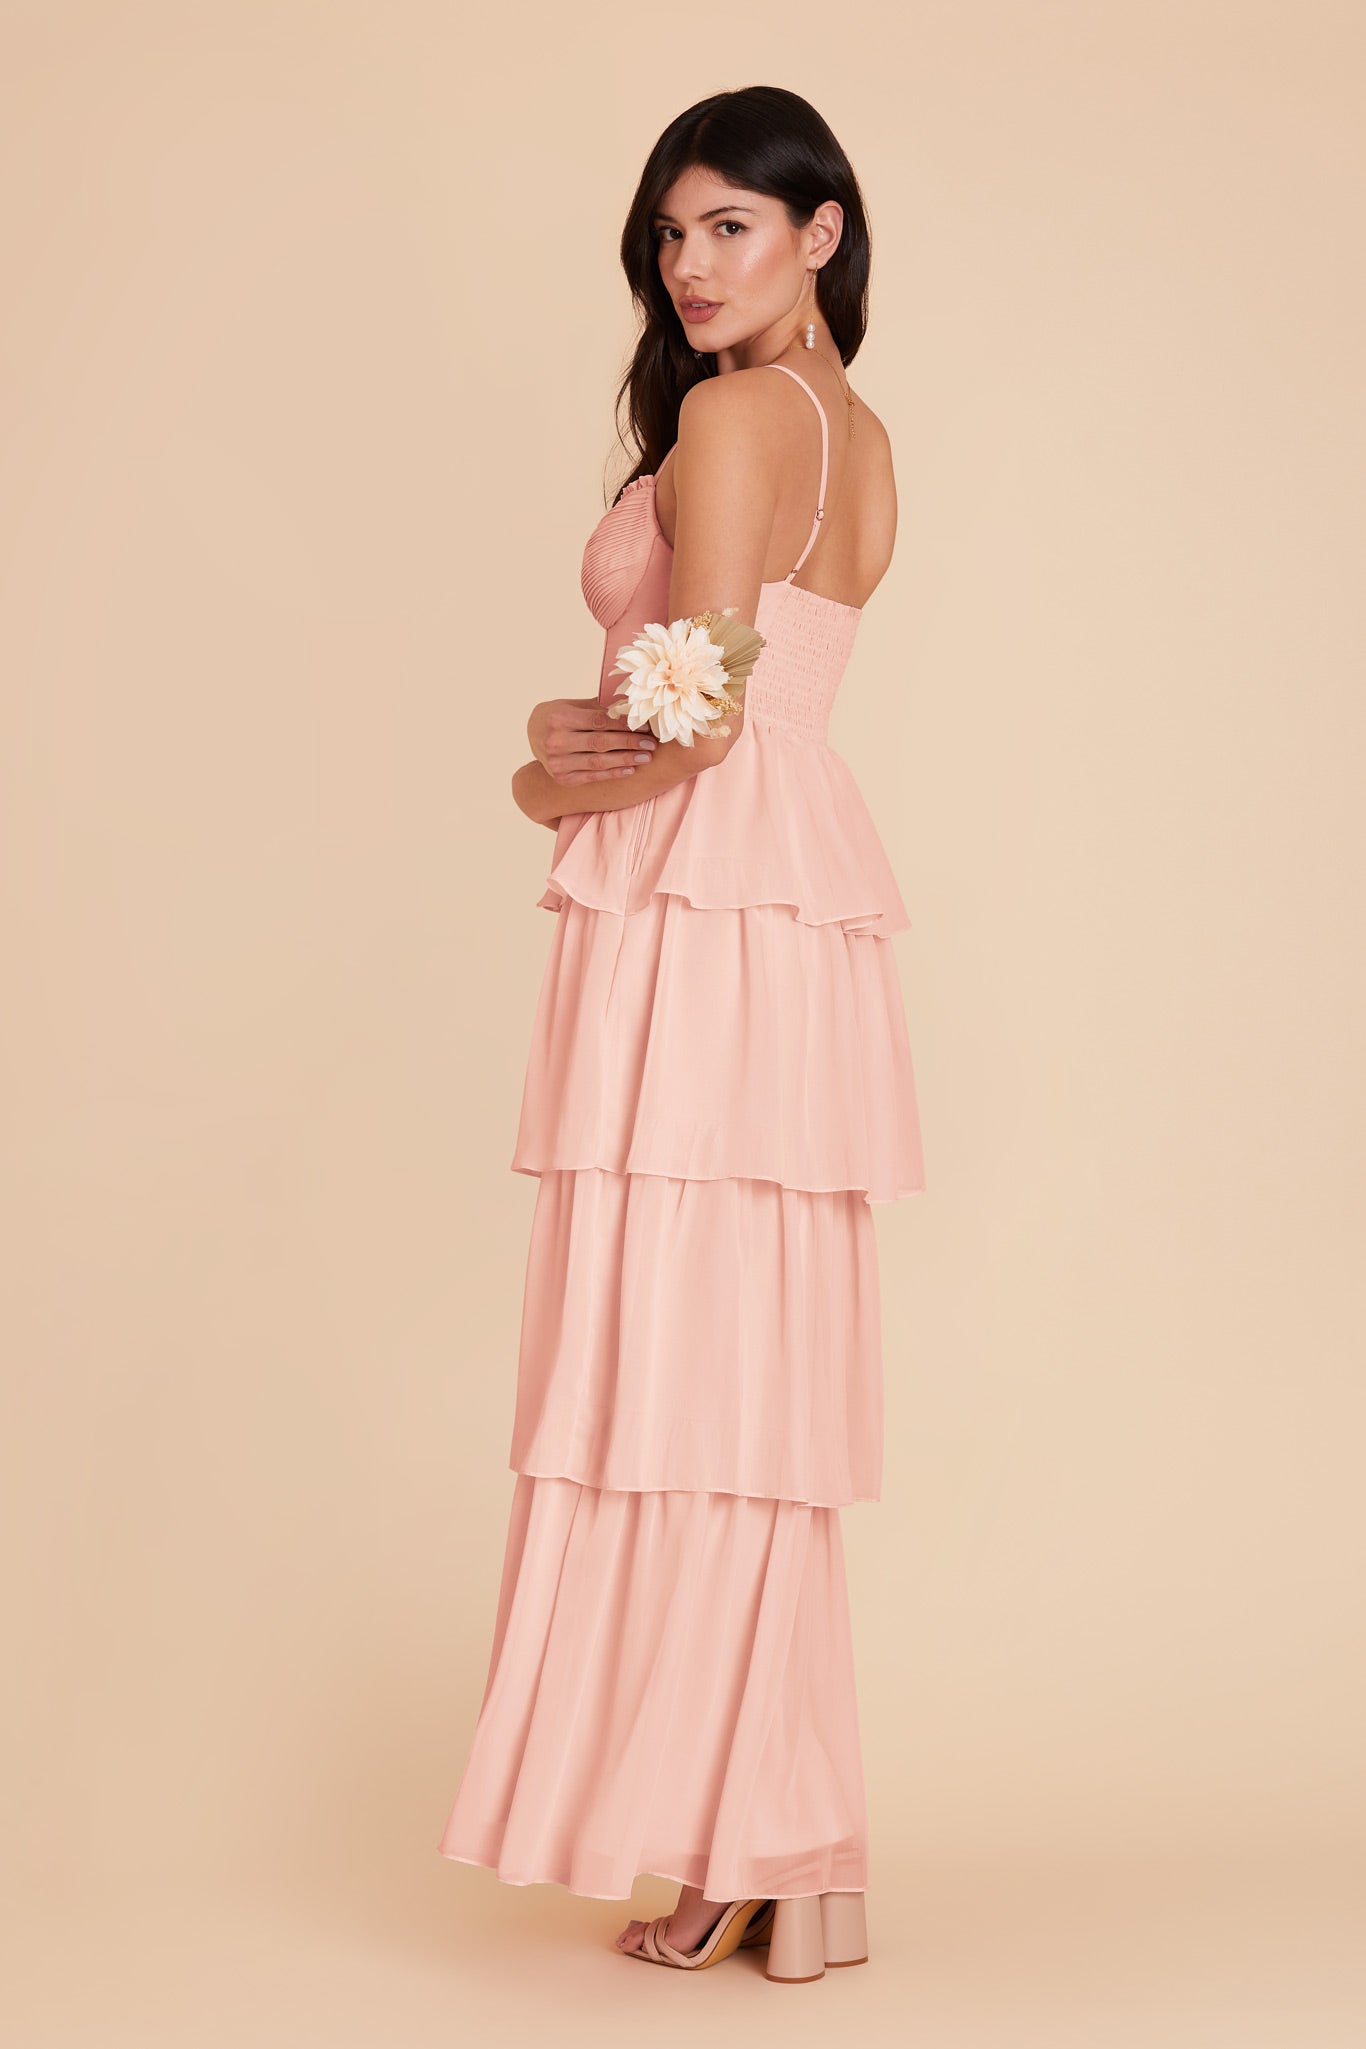 Blush Pink Lola Chiffon Dress by Birdy Grey